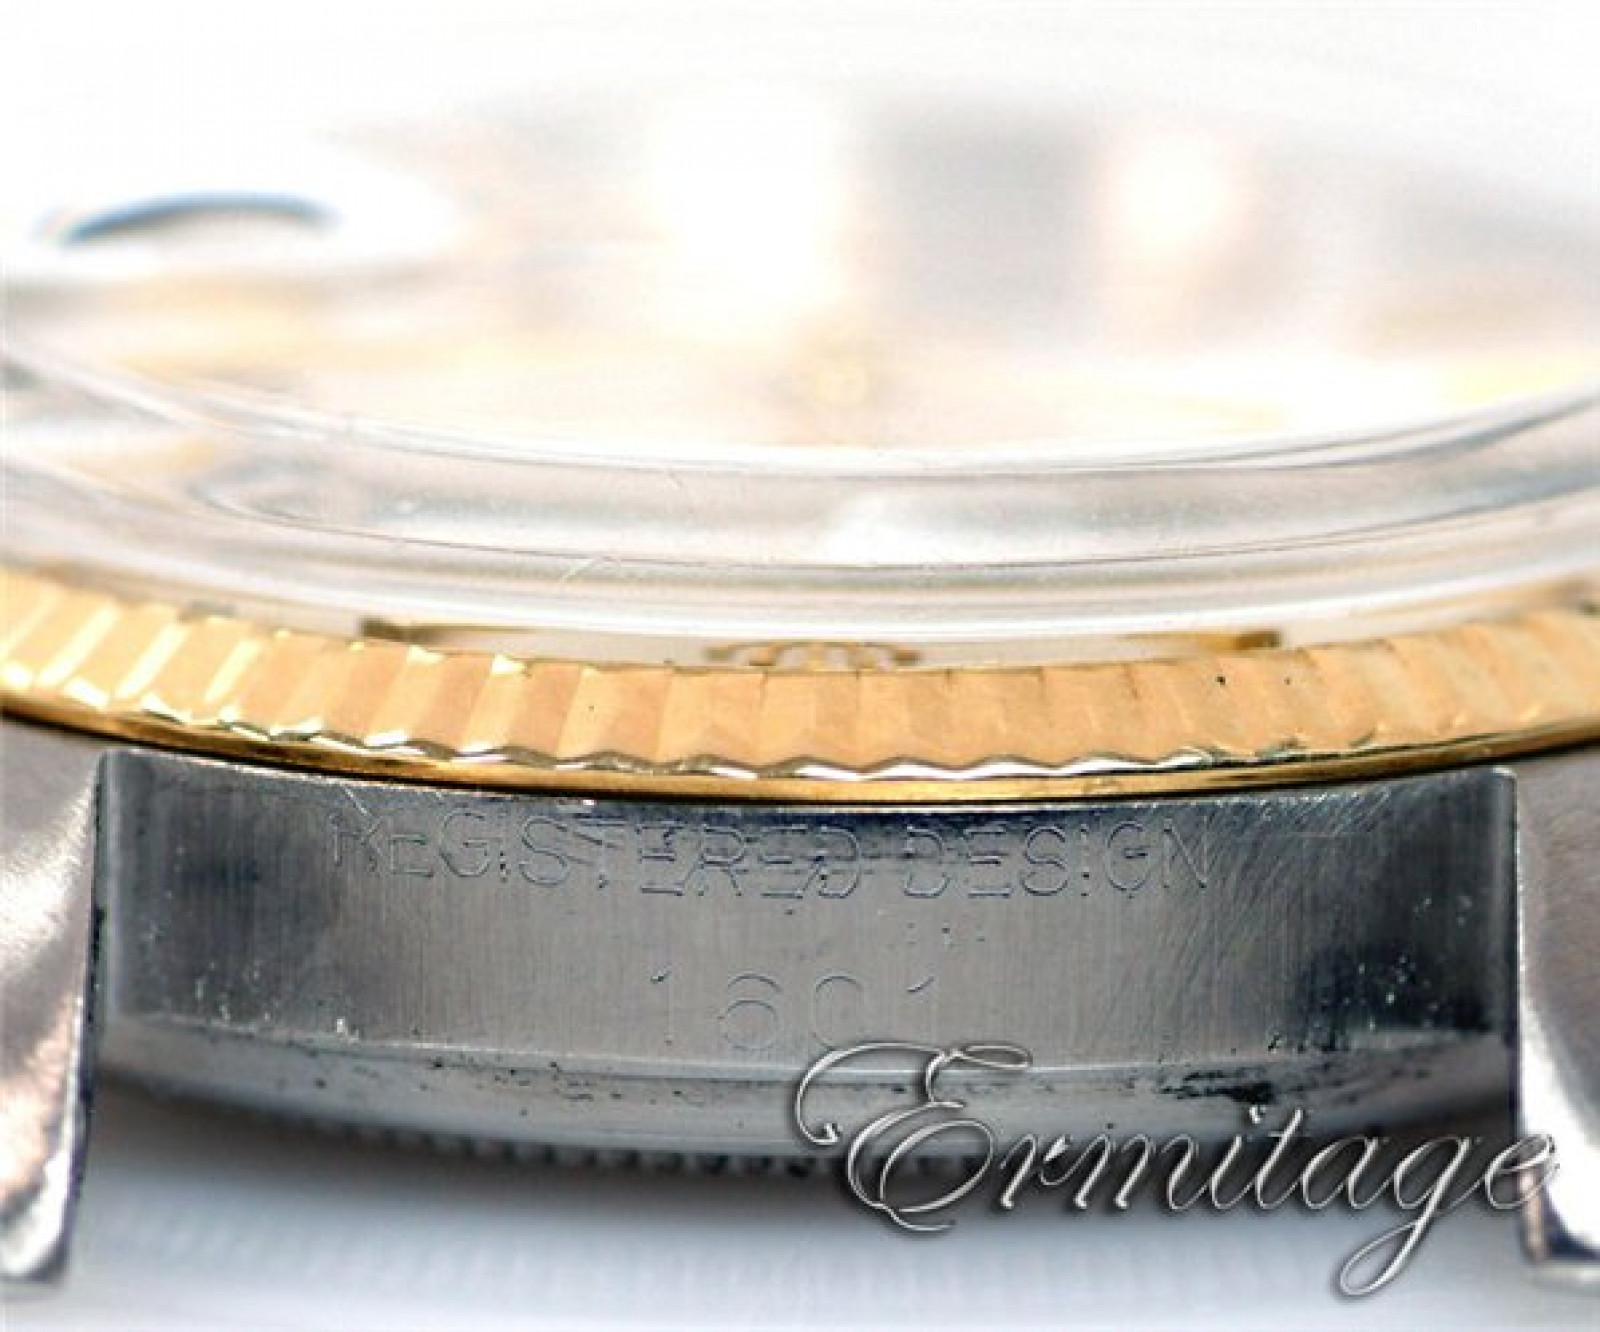 Vintage Rare Rolex Datejust 1601 Gold & Steel Year 1964